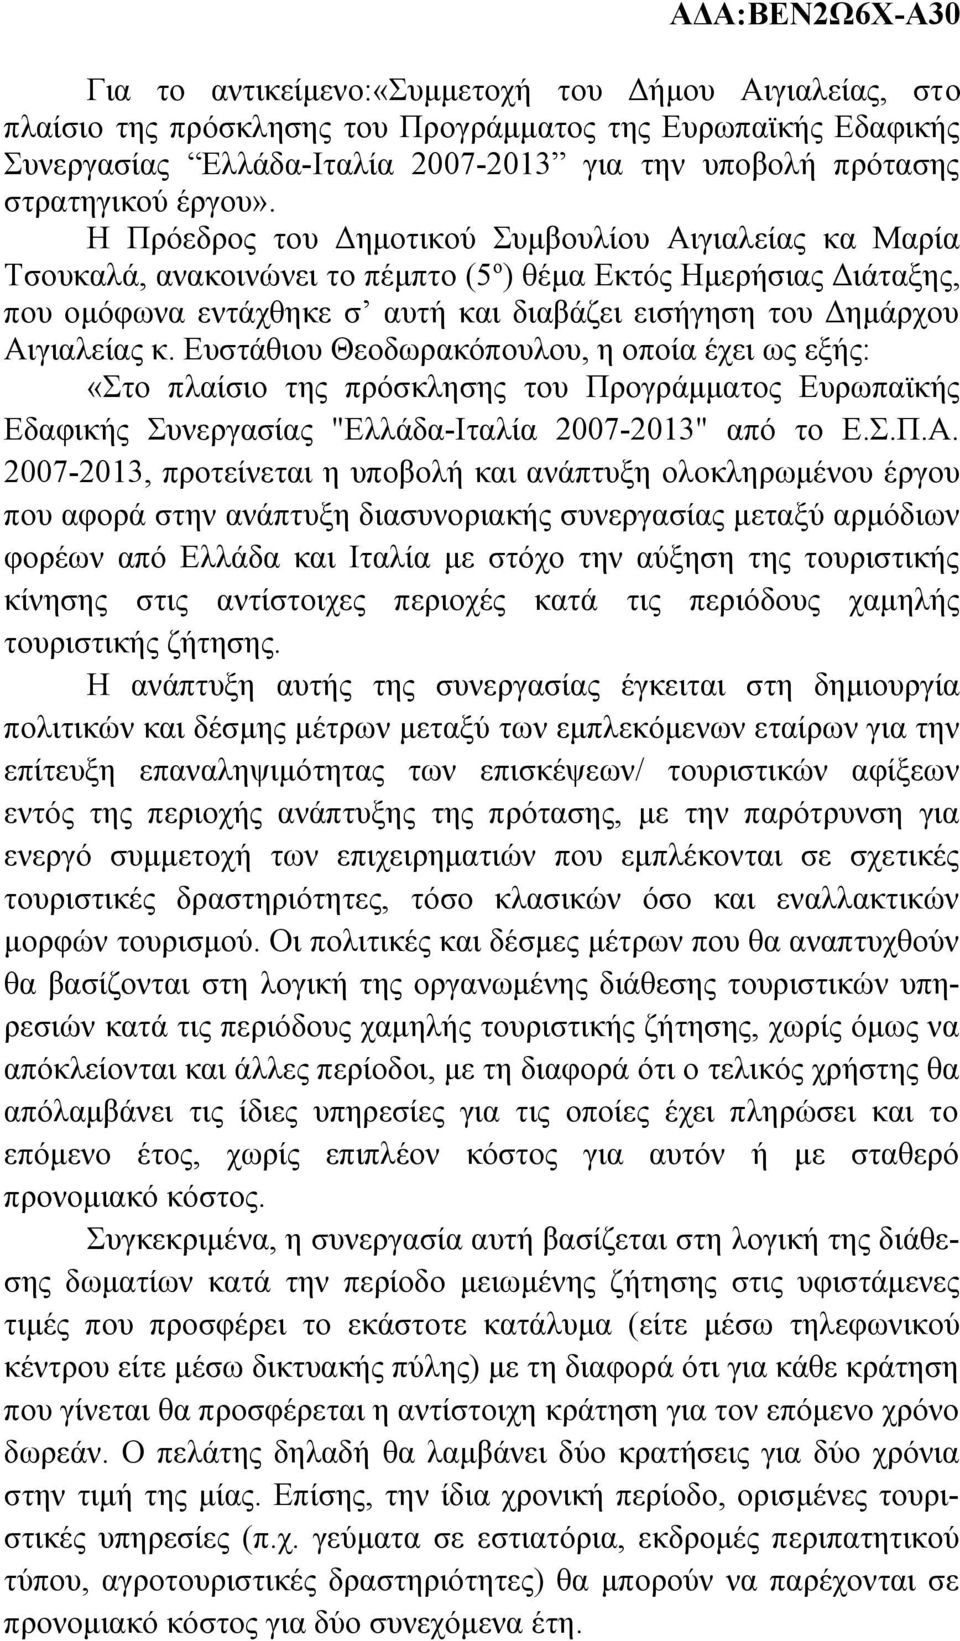 Αιγιαλείας κ. Ευστάθιου Θεοδωρακόπουλου, η οποία έχει ως εξής: «Στο πλαίσιο της πρόσκλησης του Προγράμματος Ευρωπαϊκής Εδαφικής Συνεργασίας "Ελλάδα-Ιταλία 2007-2013" από το Ε.Σ.Π.Α. 2007-2013,